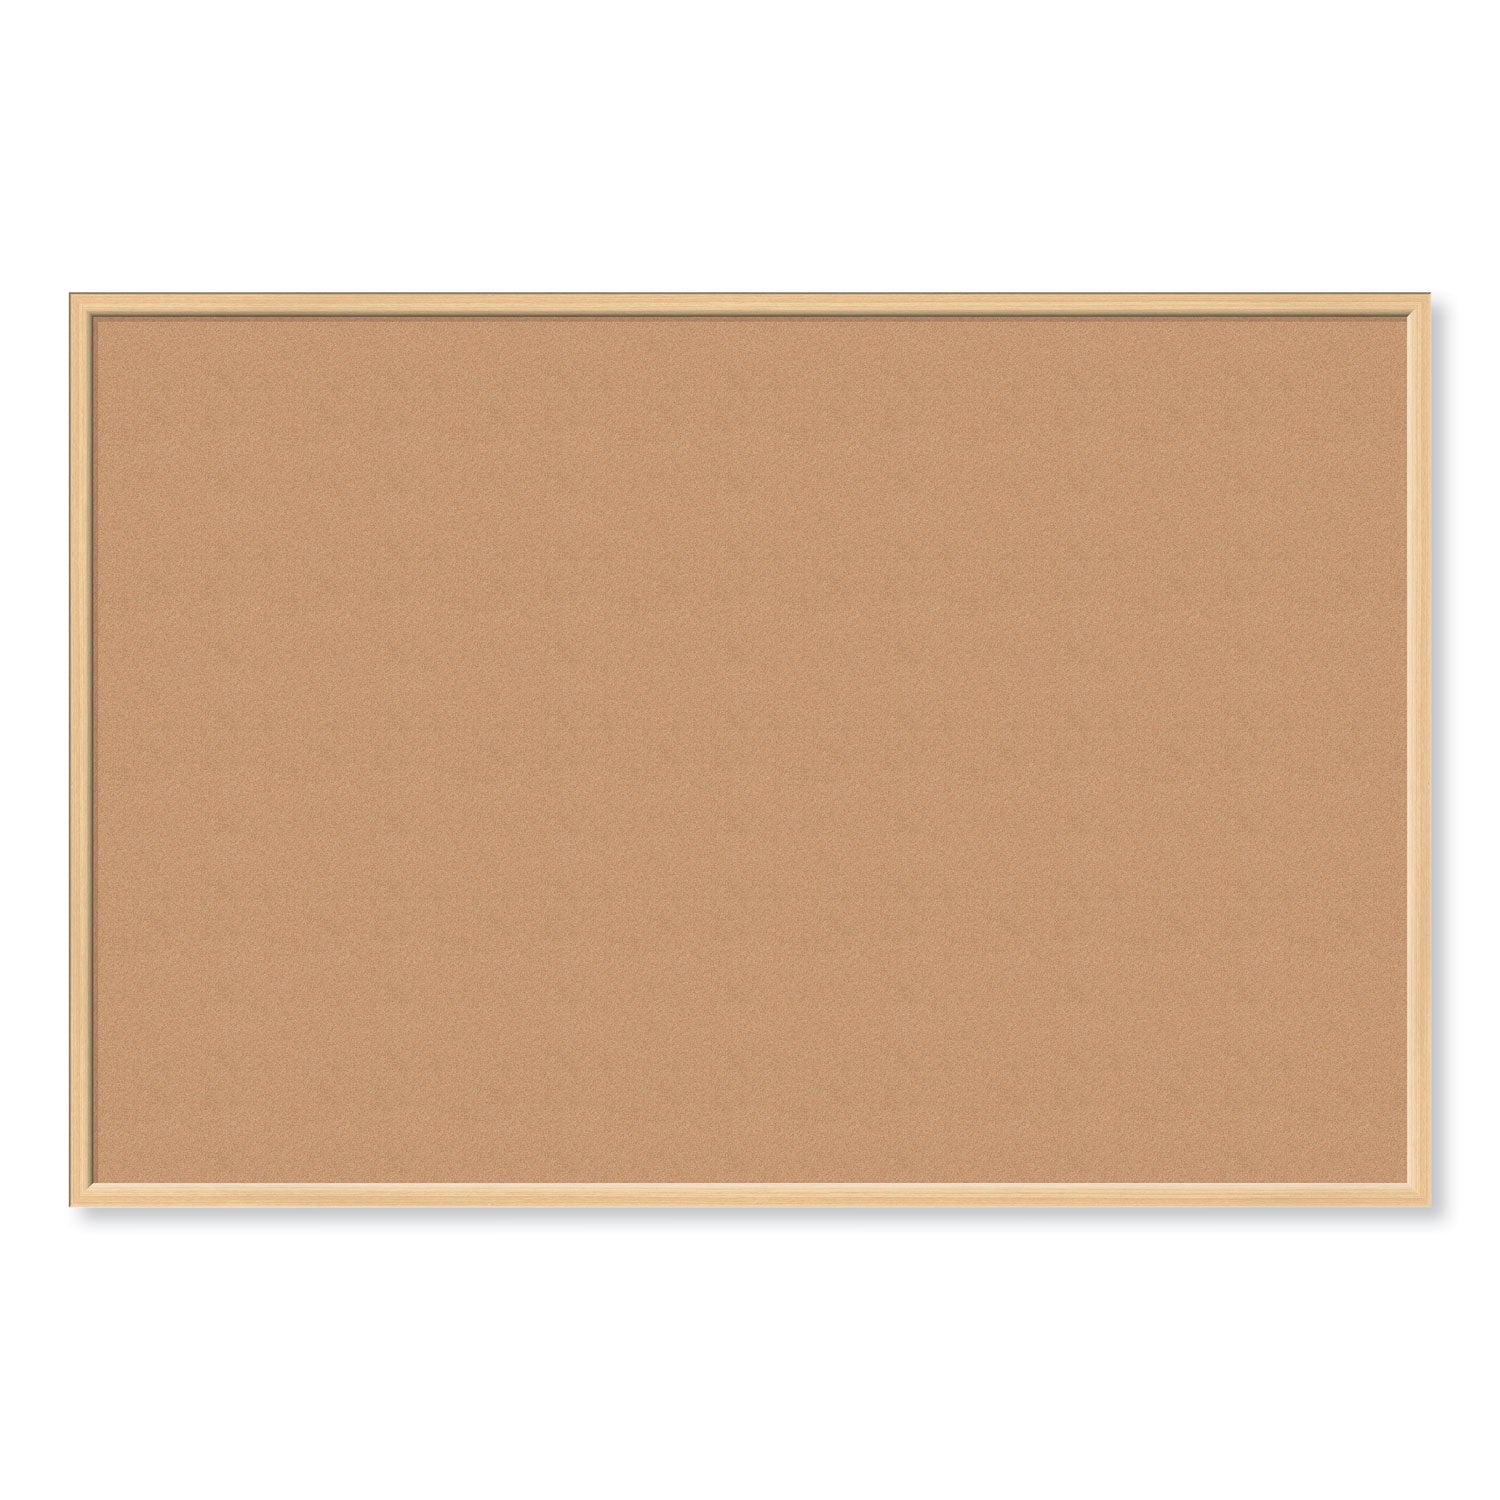 cork-bulletin-board-70-x-47-tan-surface-birch-wood-frame_ubr2872u0001 - 1